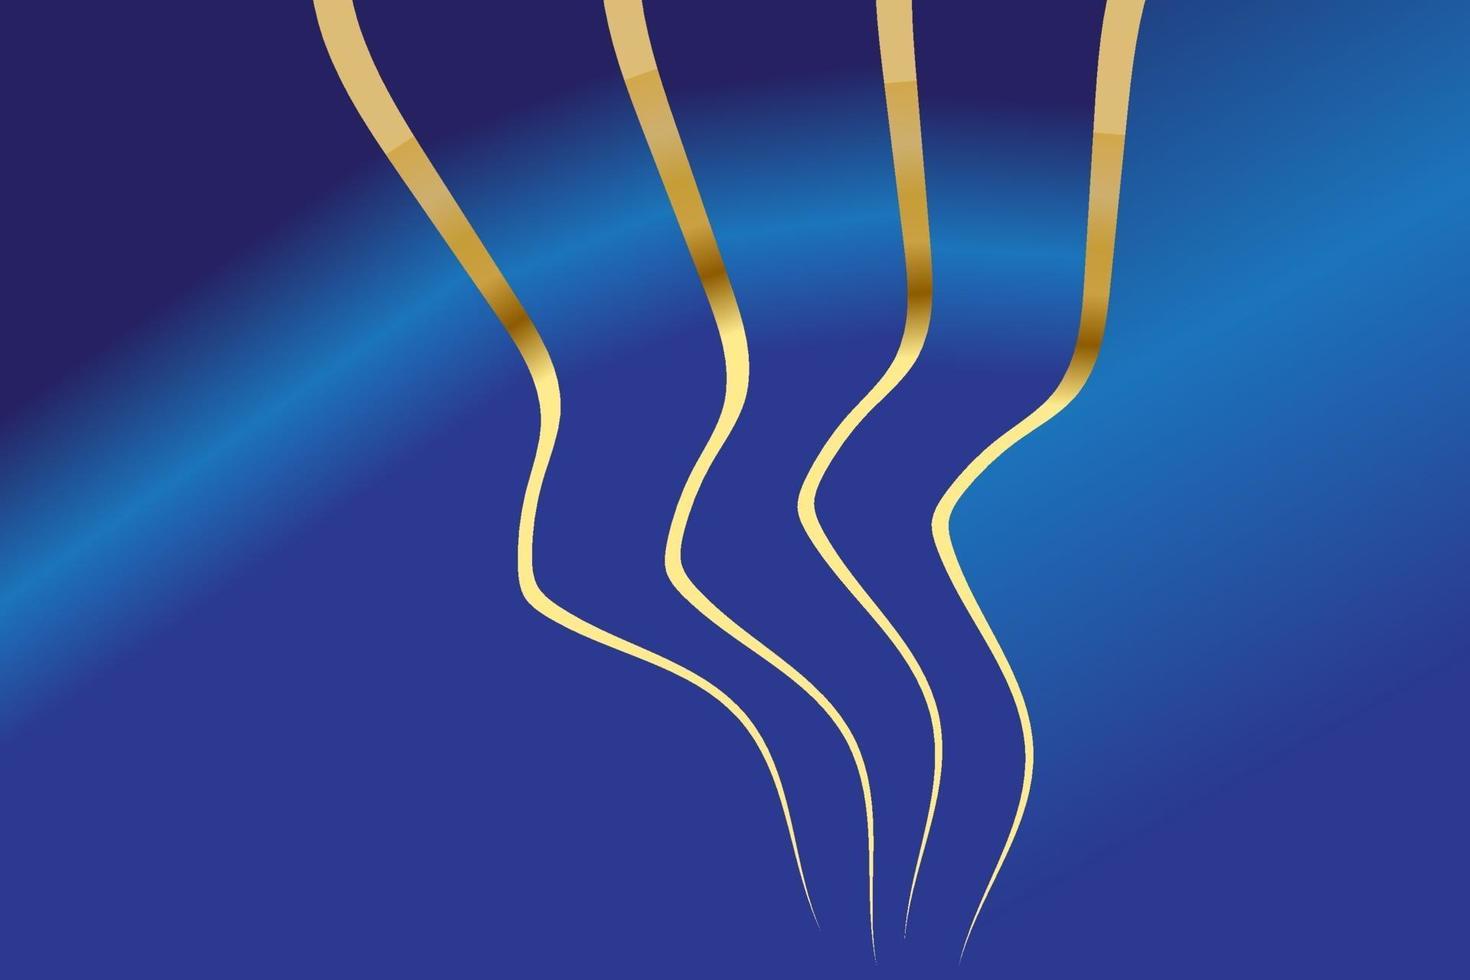 fond de luxe bleu moderne avec des lignes ondulées dorées vecteur